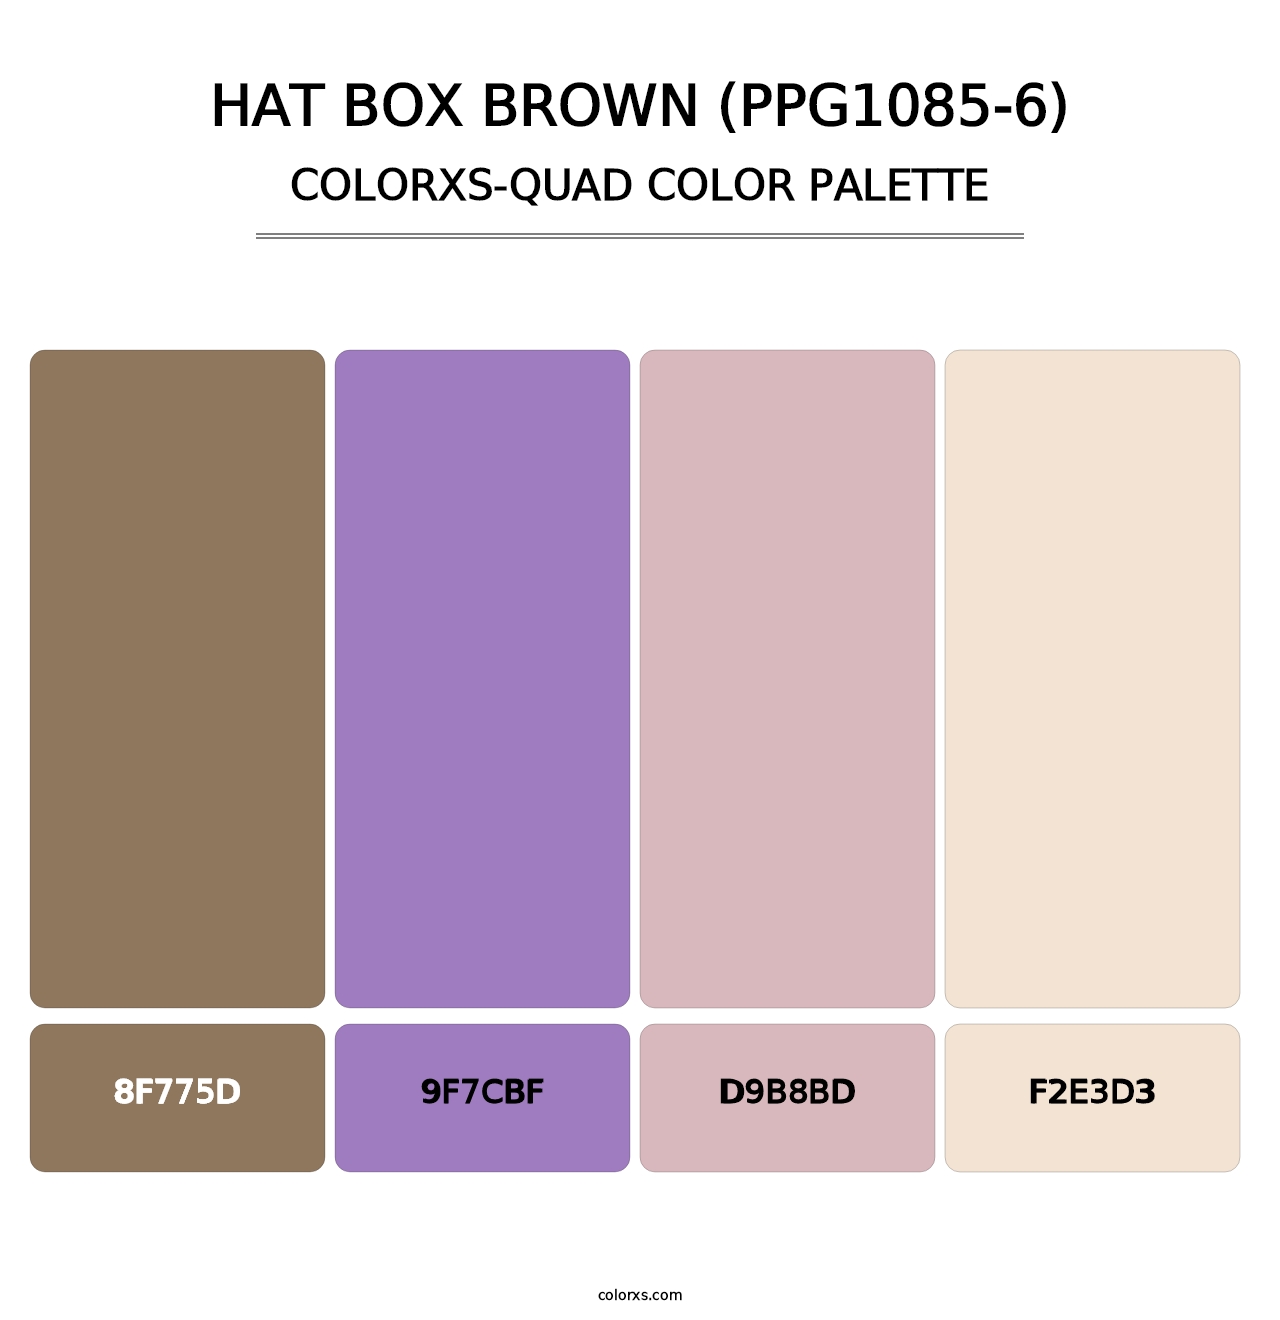 Hat Box Brown (PPG1085-6) - Colorxs Quad Palette